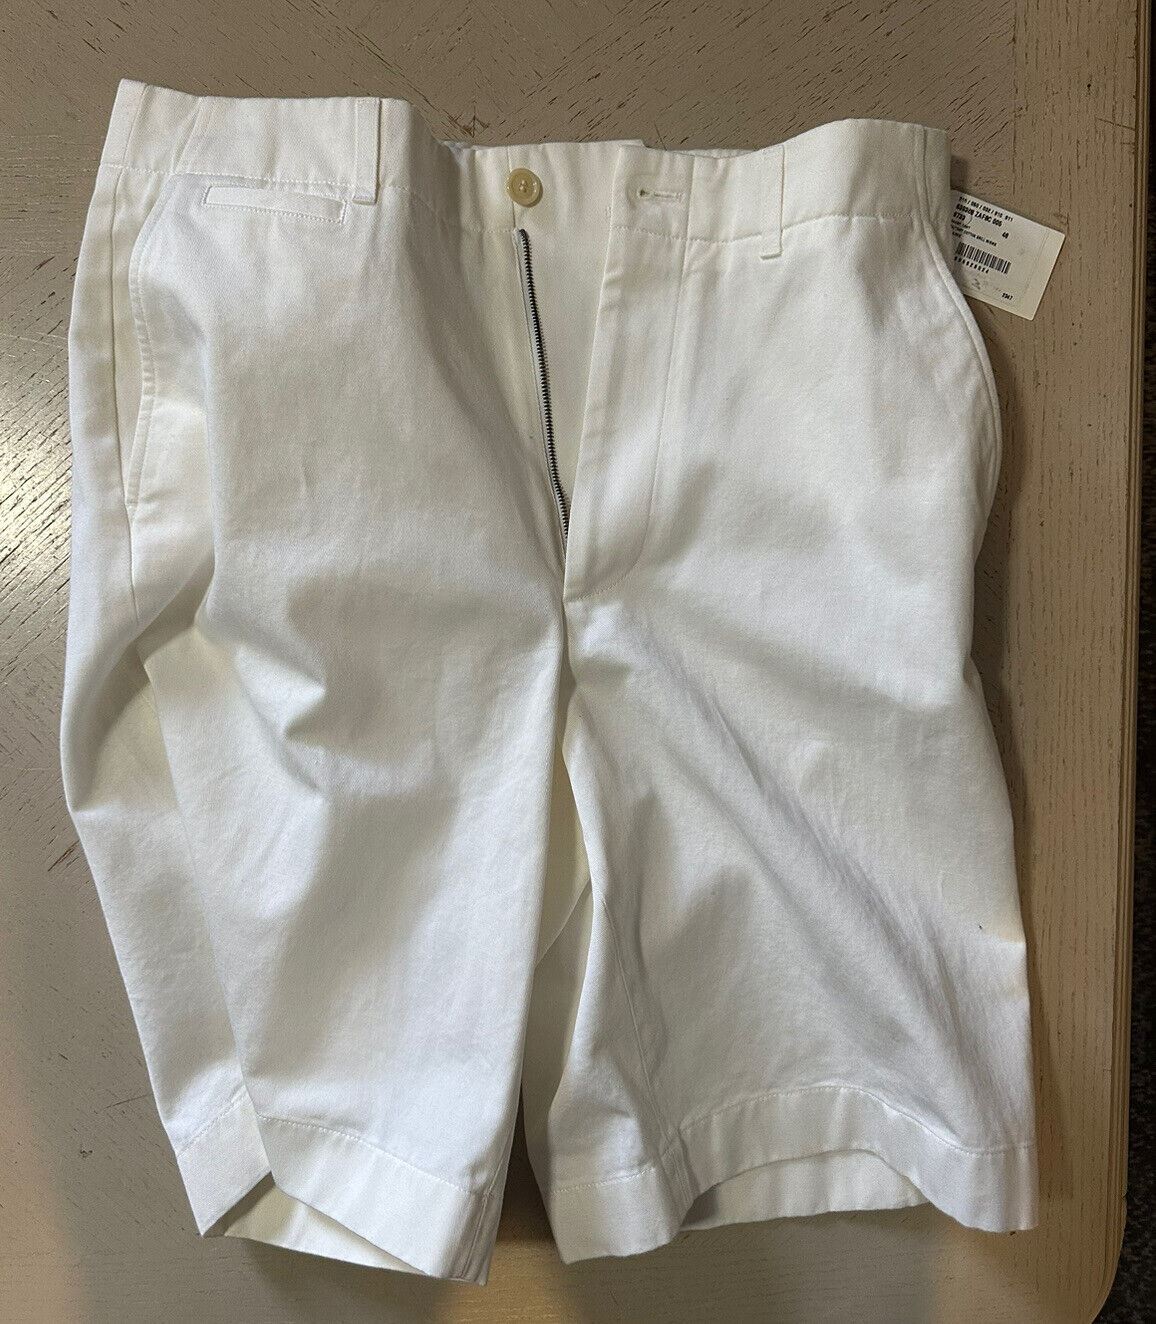 Neu mit Etikett: 880 $ Gucci Herren-Shorts aus Militär-Baumwolle, Farbe Milch, 30 US/46 Eu, Italien